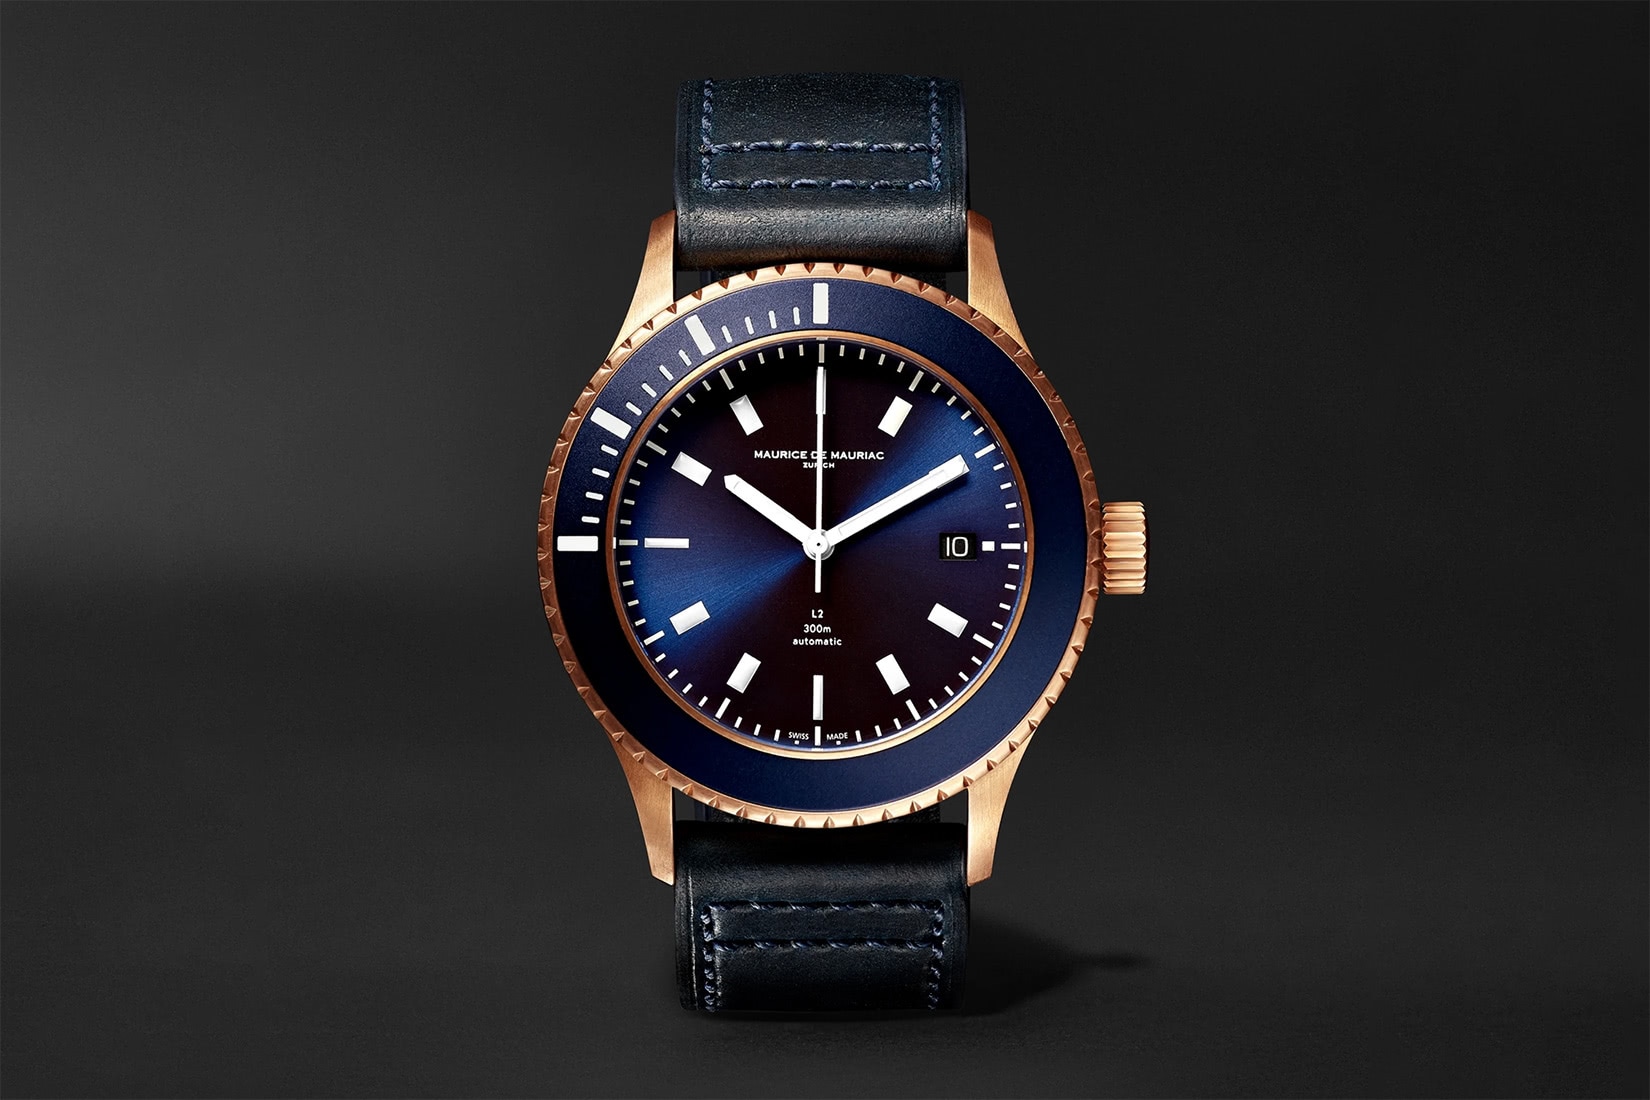 meilleure montre de plongée maurice de mauriac L2 deep blue - Luxe Digital